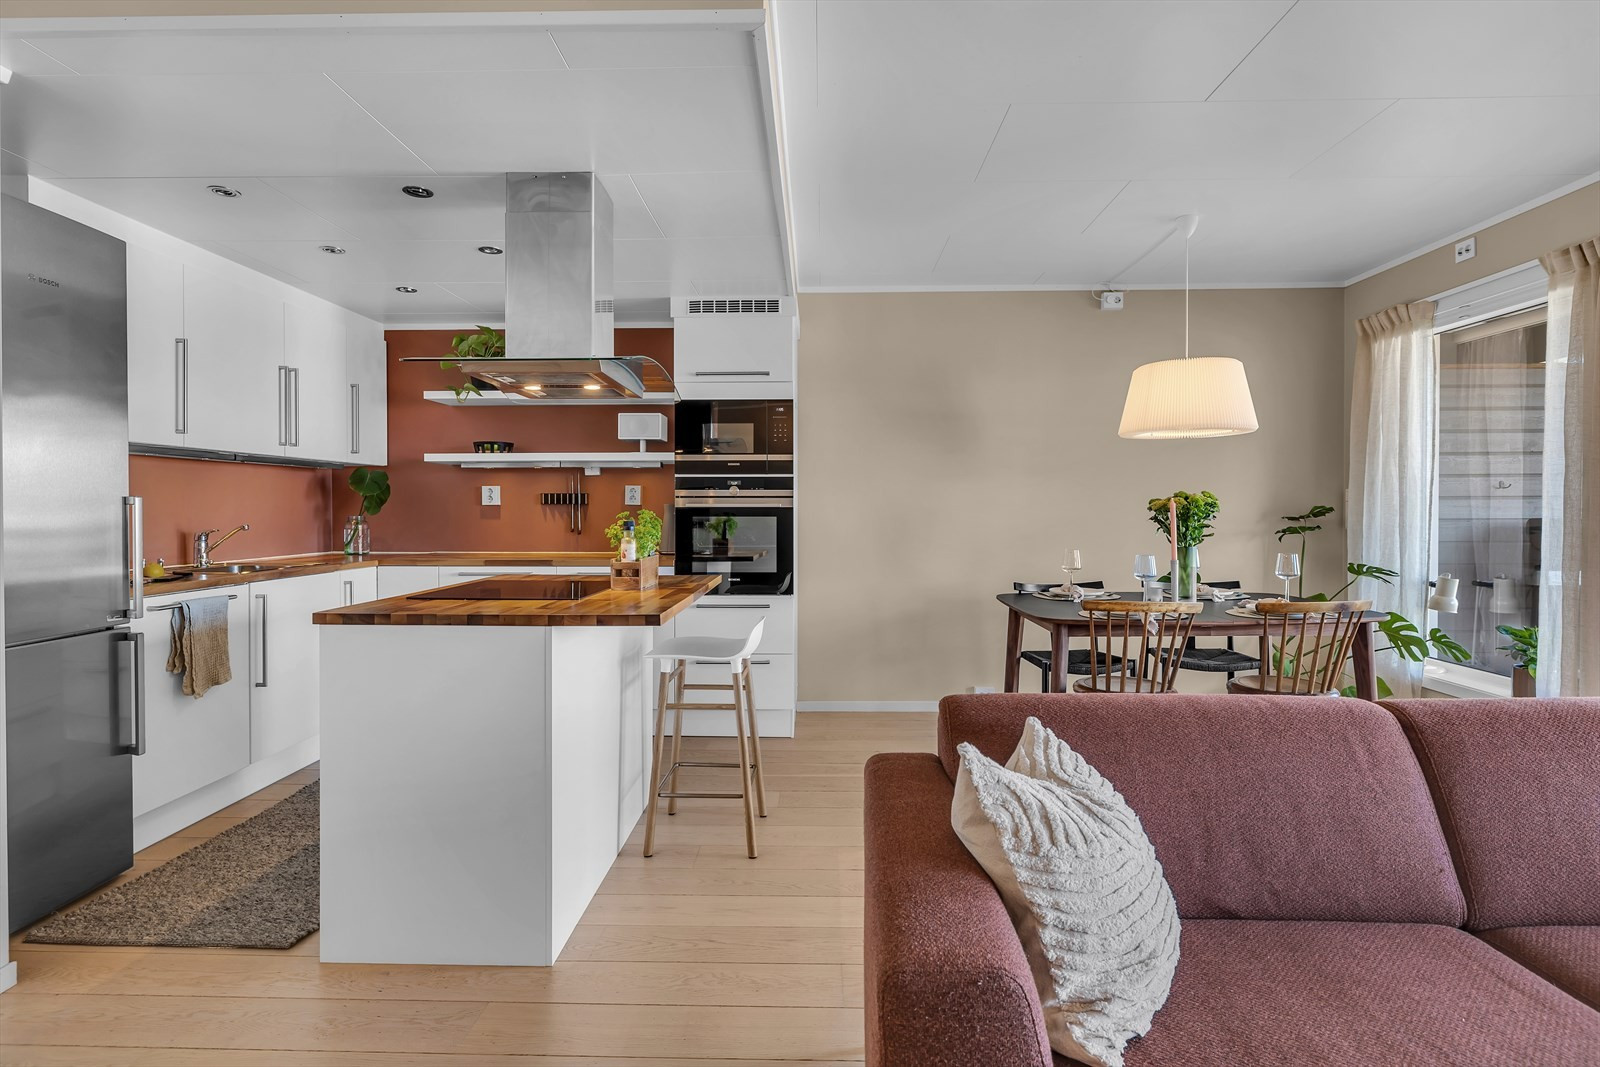 Kjøkken med hvite glatte fronter - integrert komfyr, micro og oppvaskmaskin